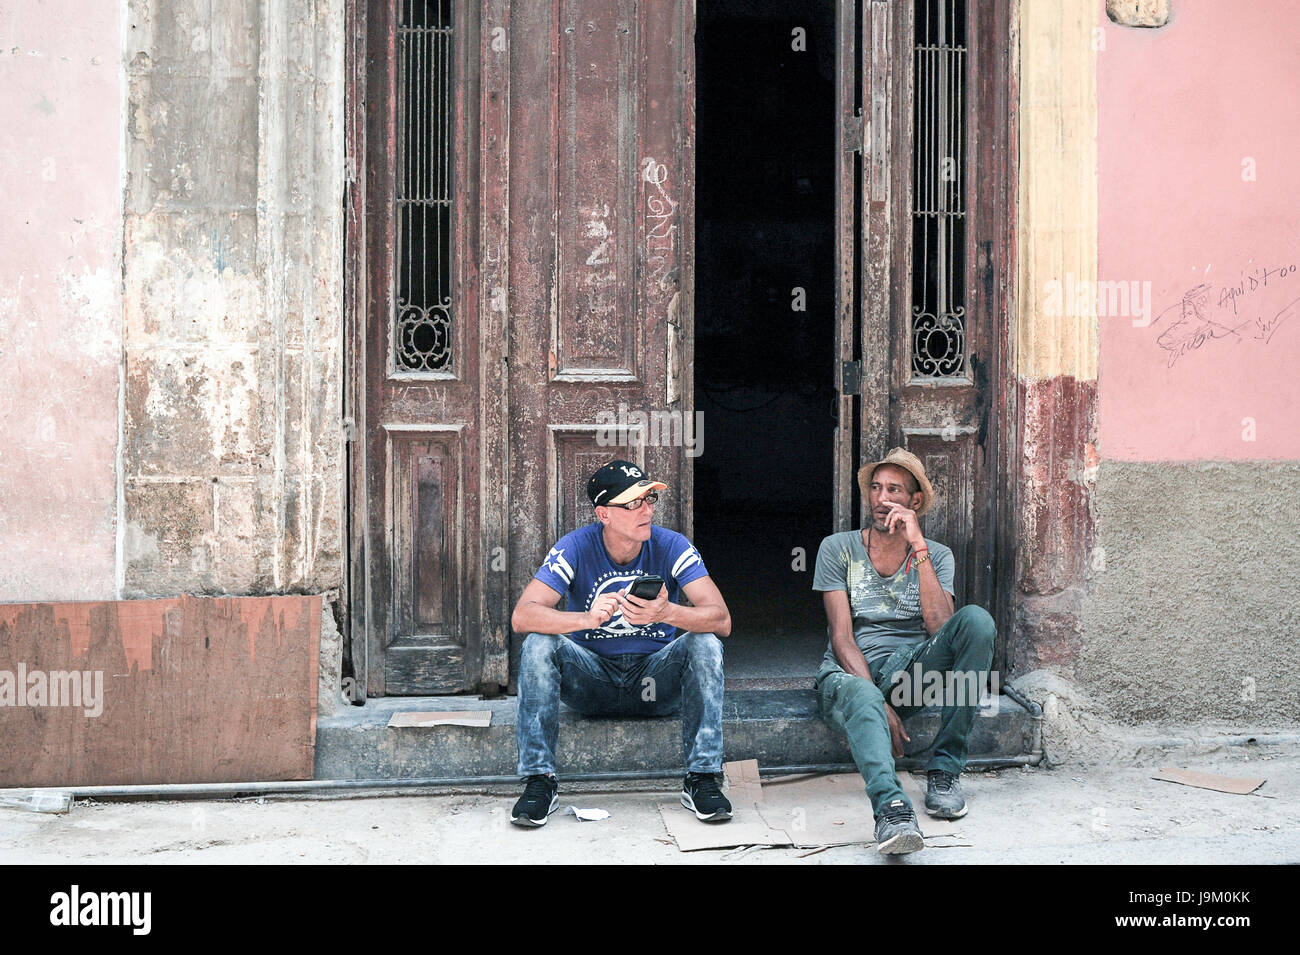 Lokalen Kubaner sitzt und raucht Zigarre vor Haustür in Havanna, Kuba Stockfoto